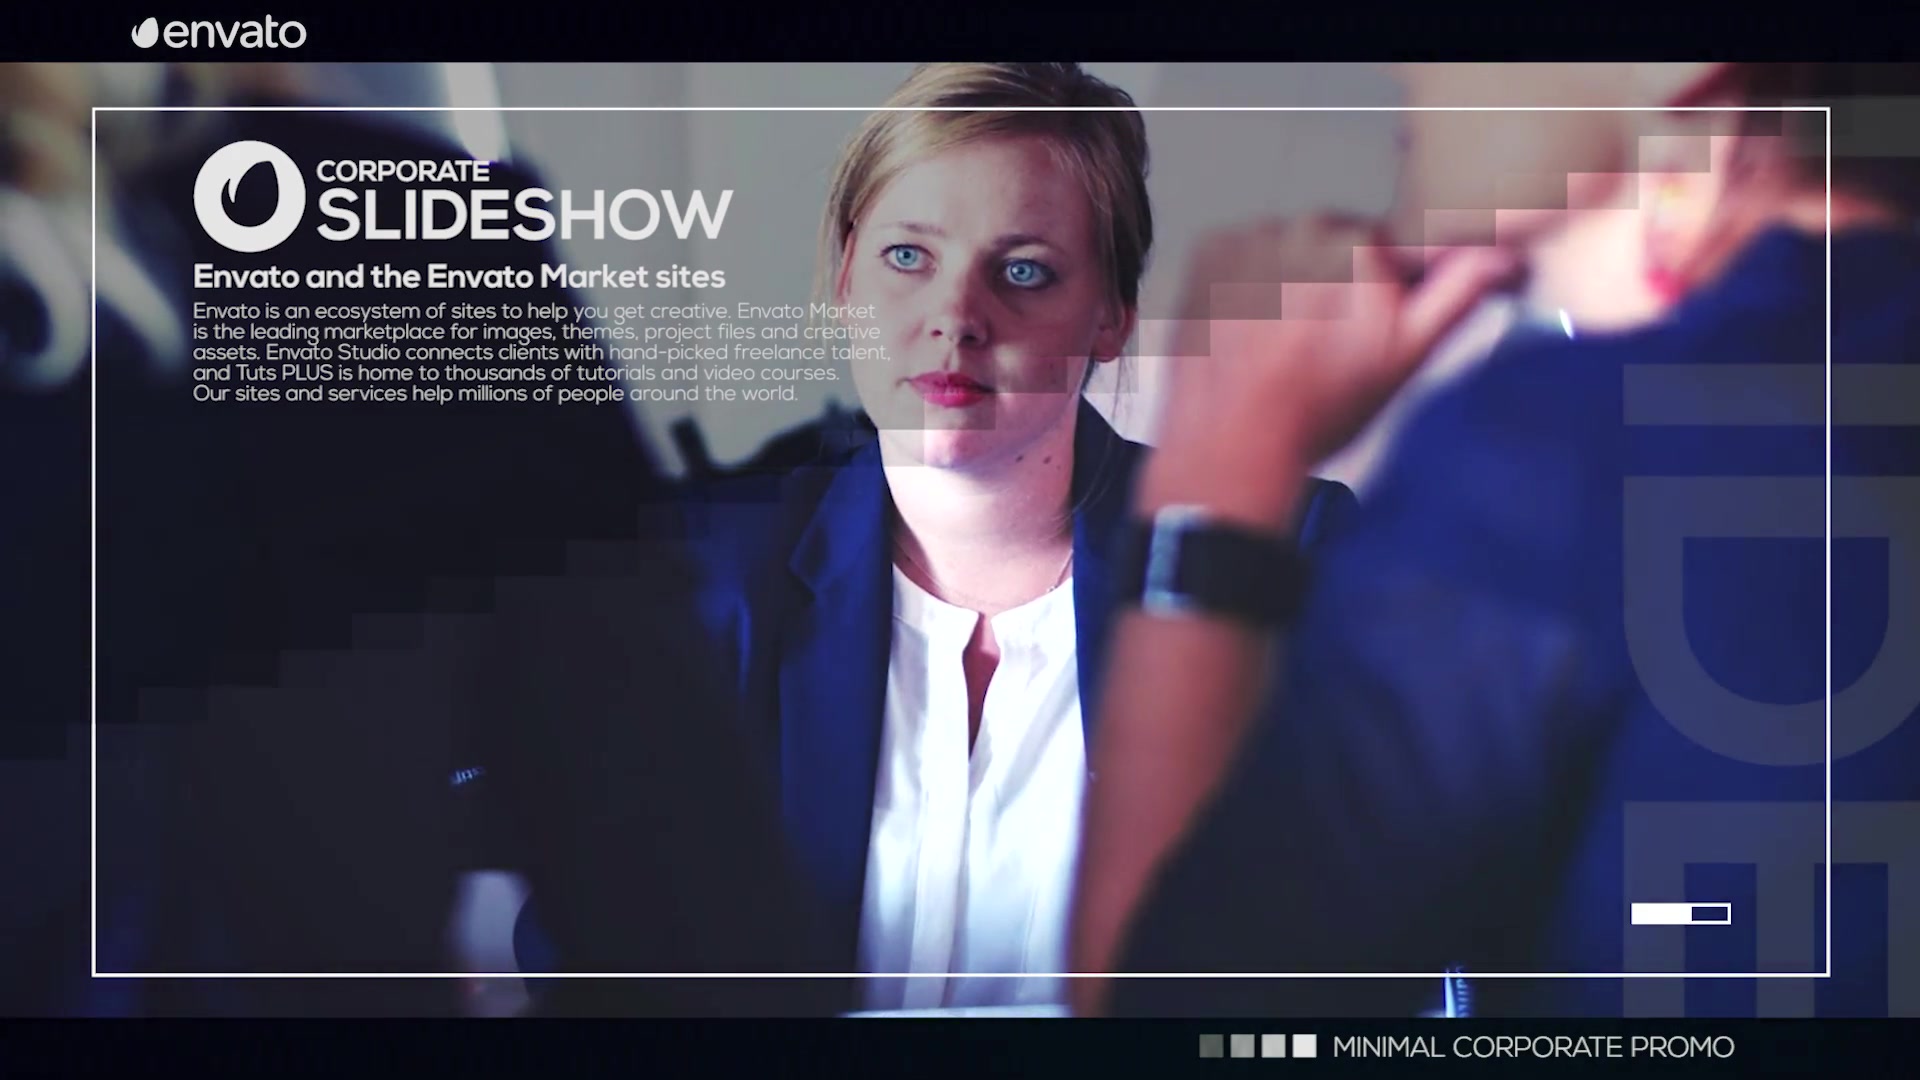 Corporate Slideshow Videohive 21787312 Premiere Pro Image 7